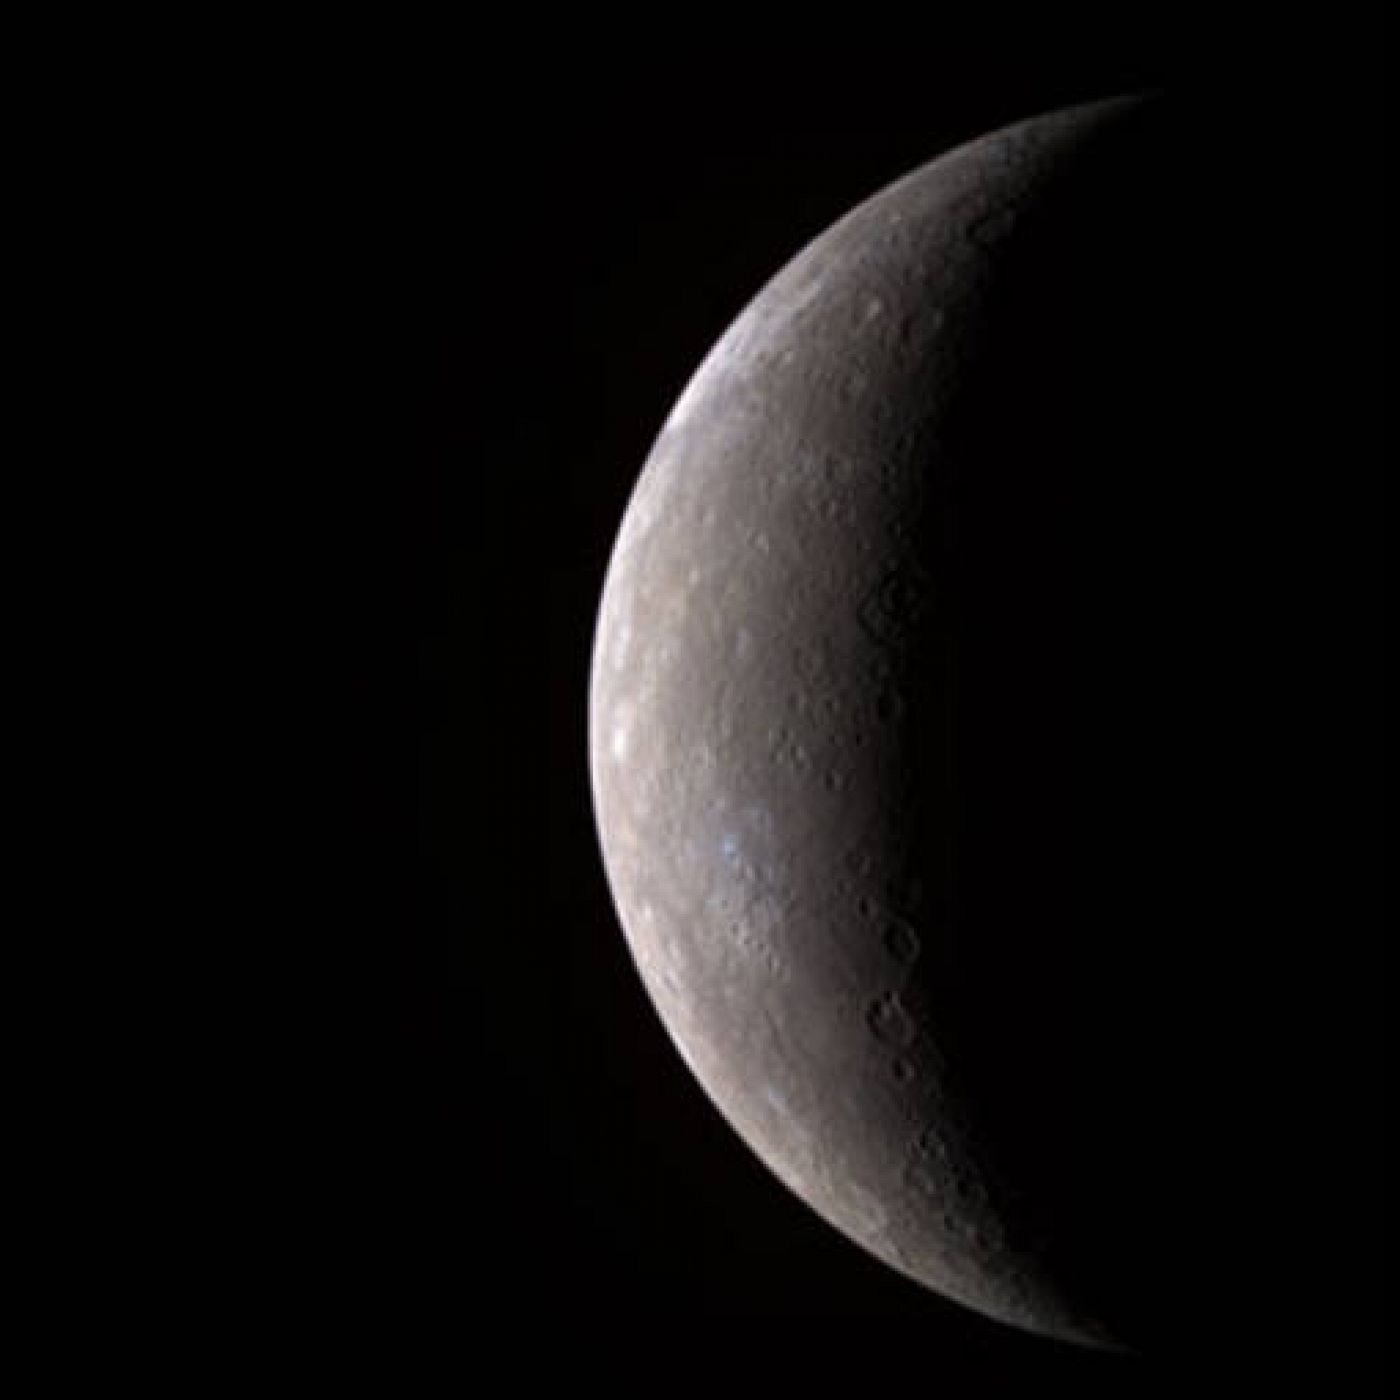 Mercurio fue visitado por una sonda en 1974 y 1975, cuando el 'Mariner 10' de la NASA pasó tres veces por el planeta.